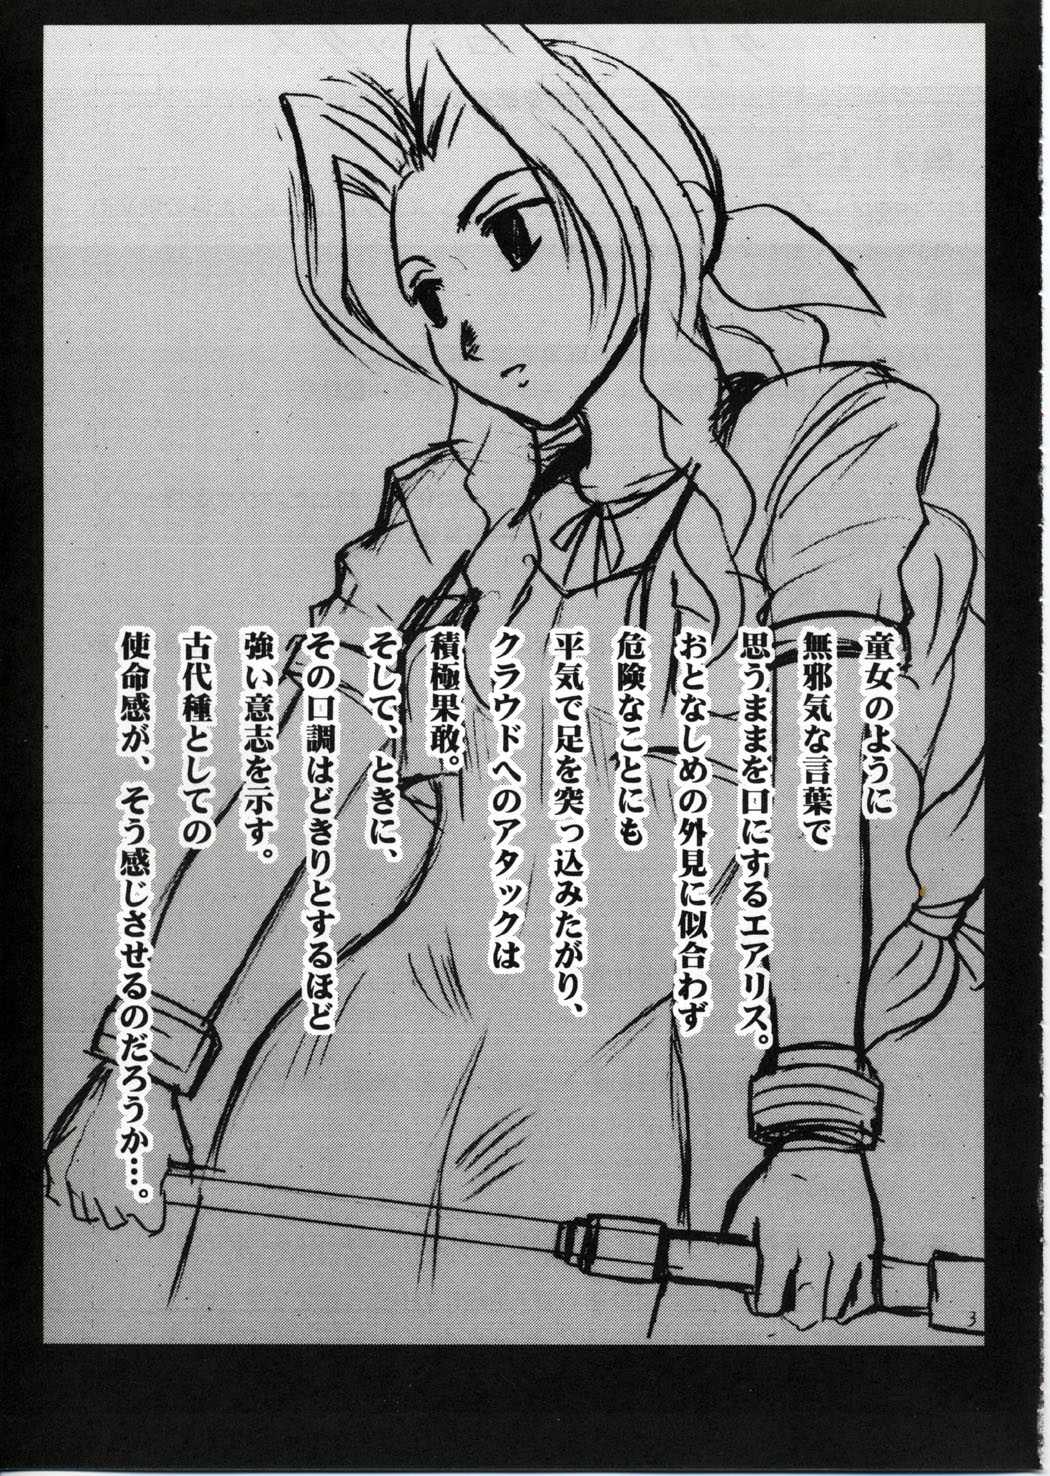 [Crimson Comics] Kaikan no Materia (Final Fantasy 7) 